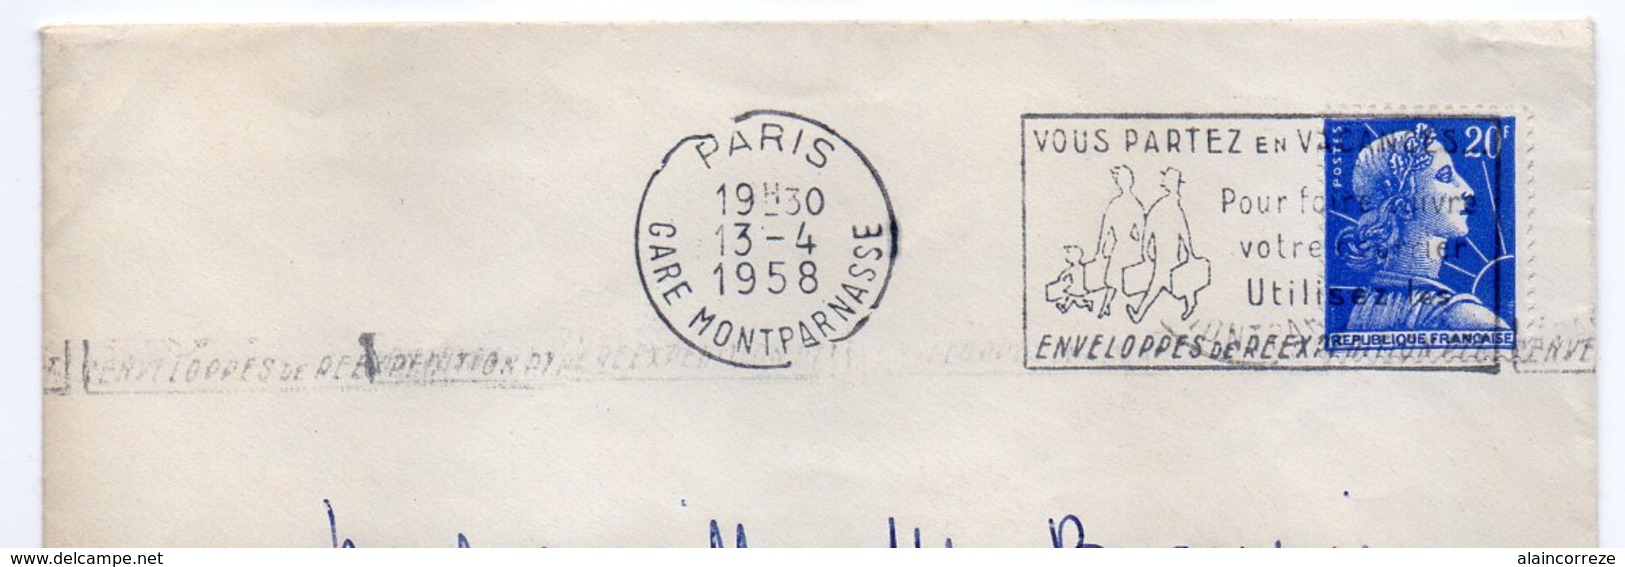 Flamme SECAP PARIS GARE MONTPARNASSE "VOUS PARTEZ EN VACANCES POUR FAIRE SUIVRE VOTRE COURRIER UTILISEZ..." 1958 - Mechanical Postmarks (Advertisement)